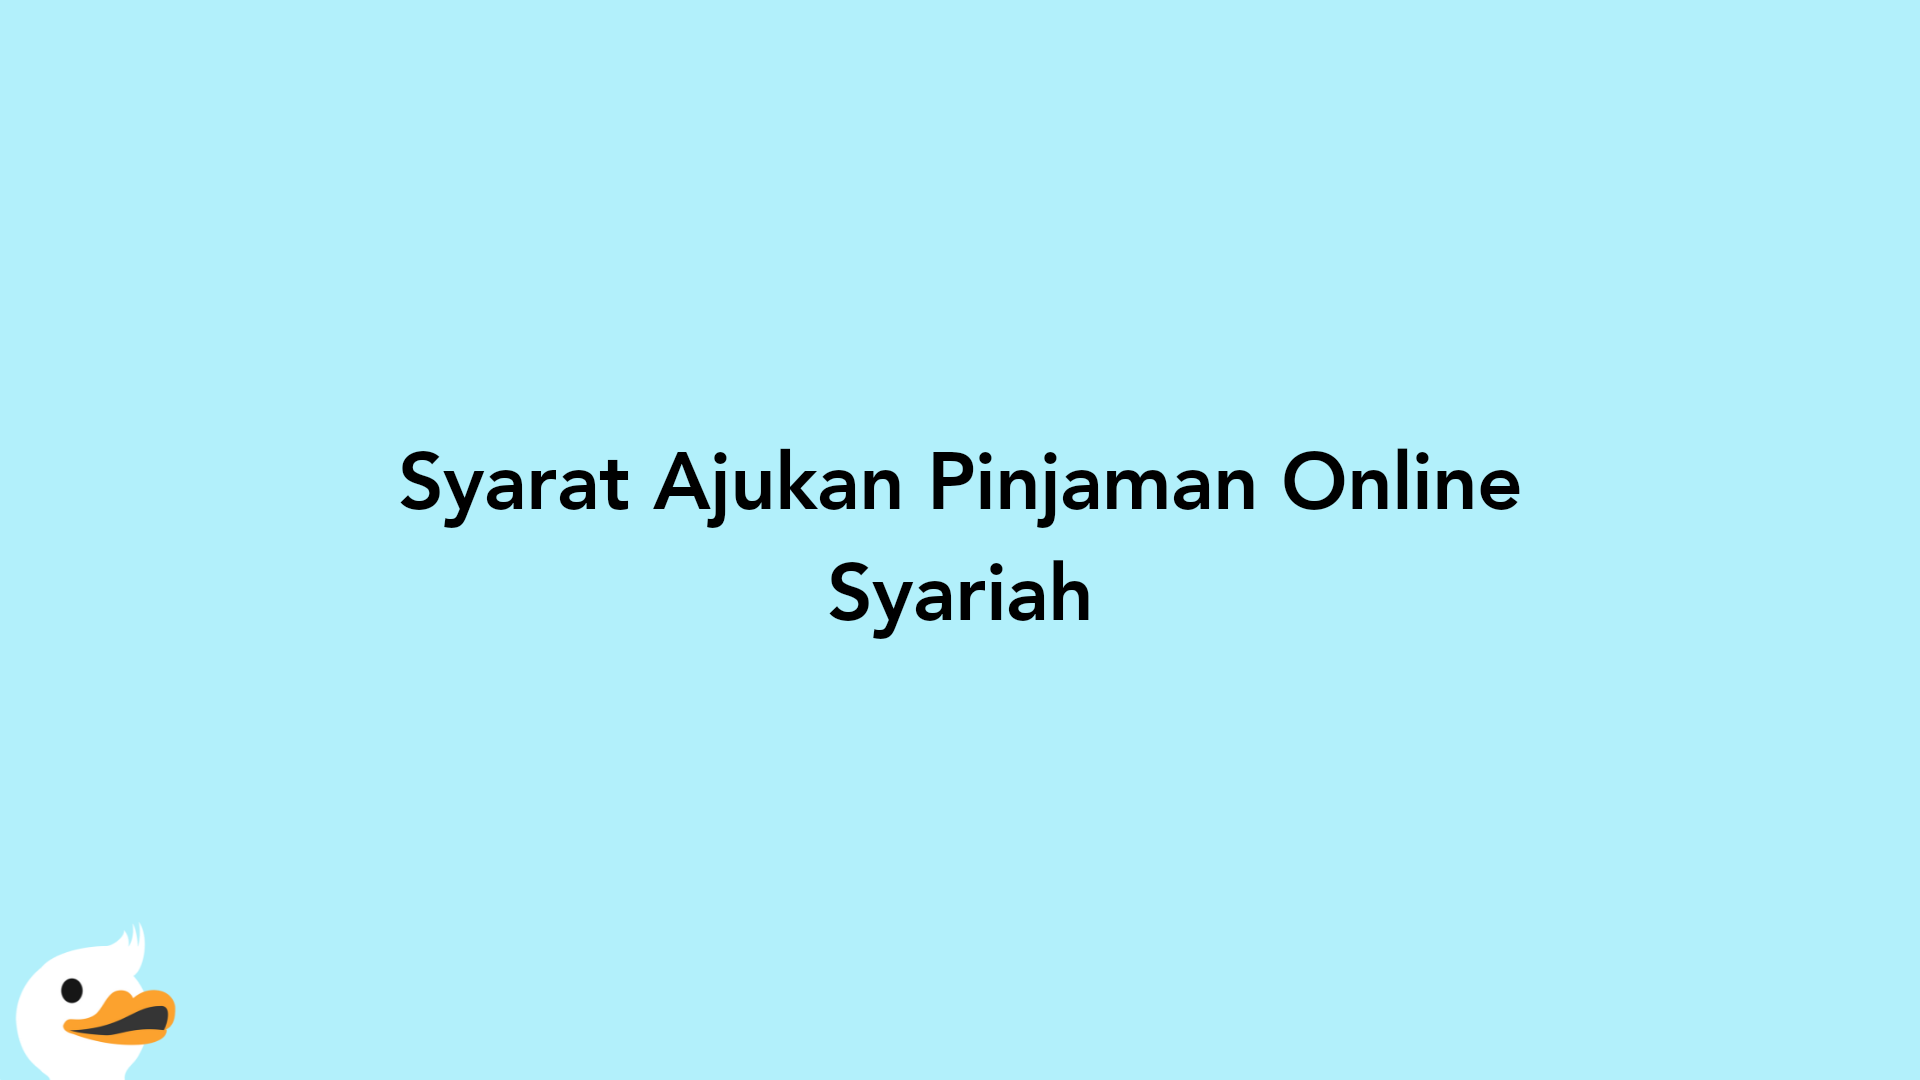 Syarat Ajukan Pinjaman Online Syariah